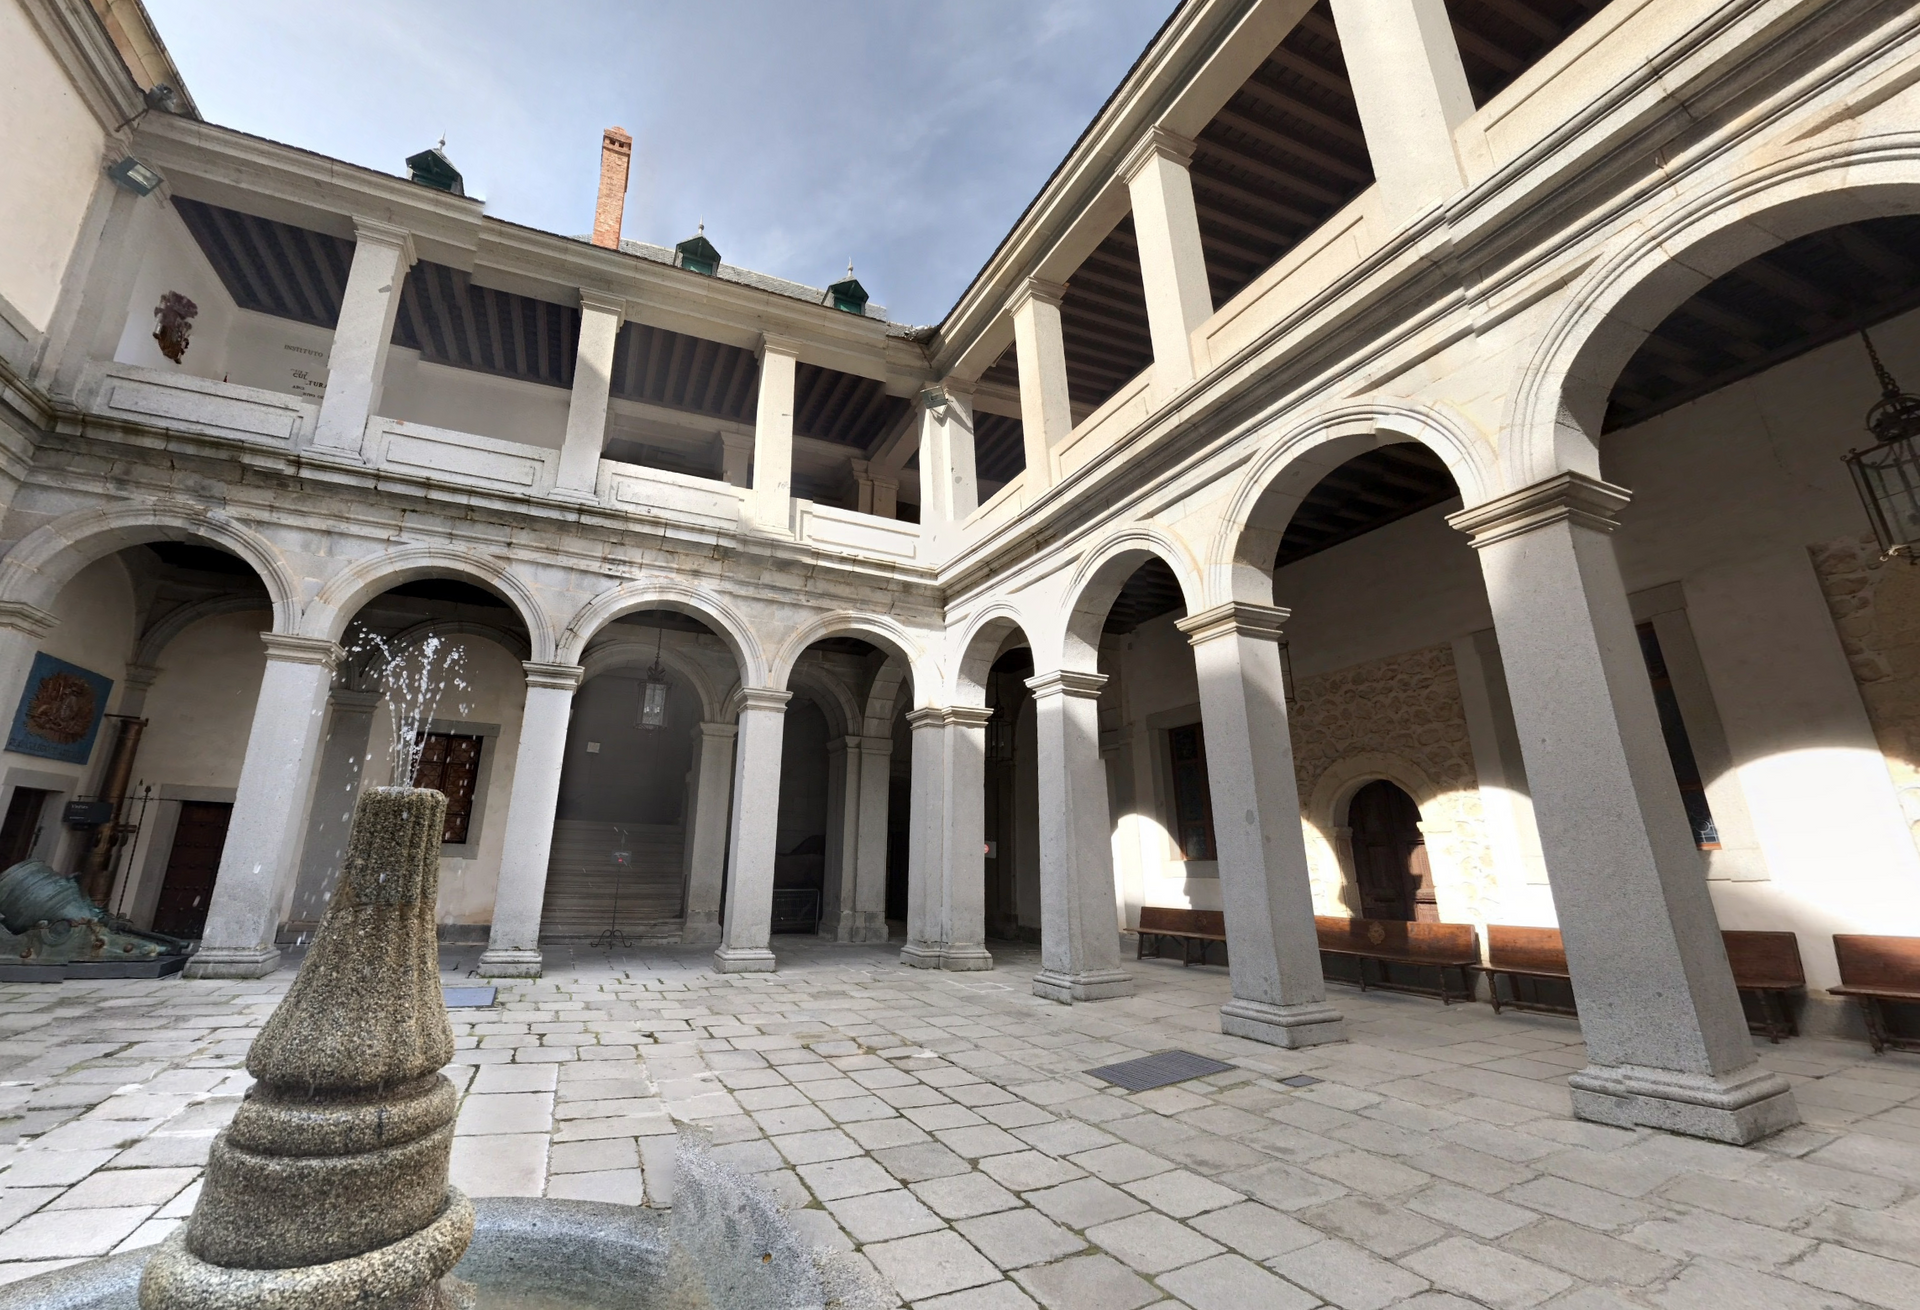 Alcázar Courtyard by Google Earth